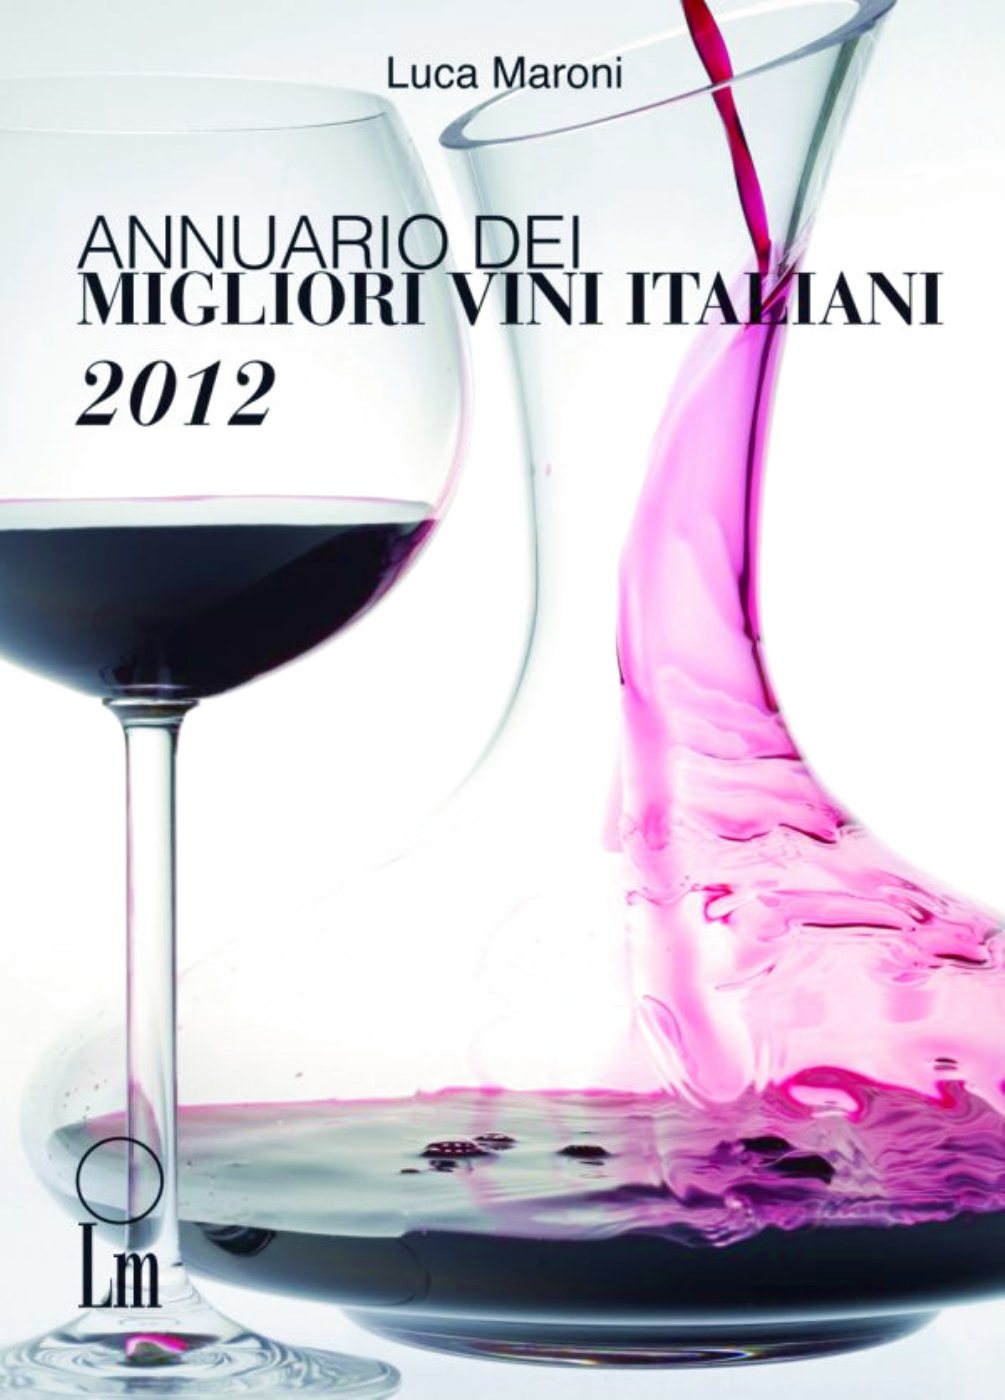 Annuario dei Migliori Vini Italiani 2012  di Luca Maroni